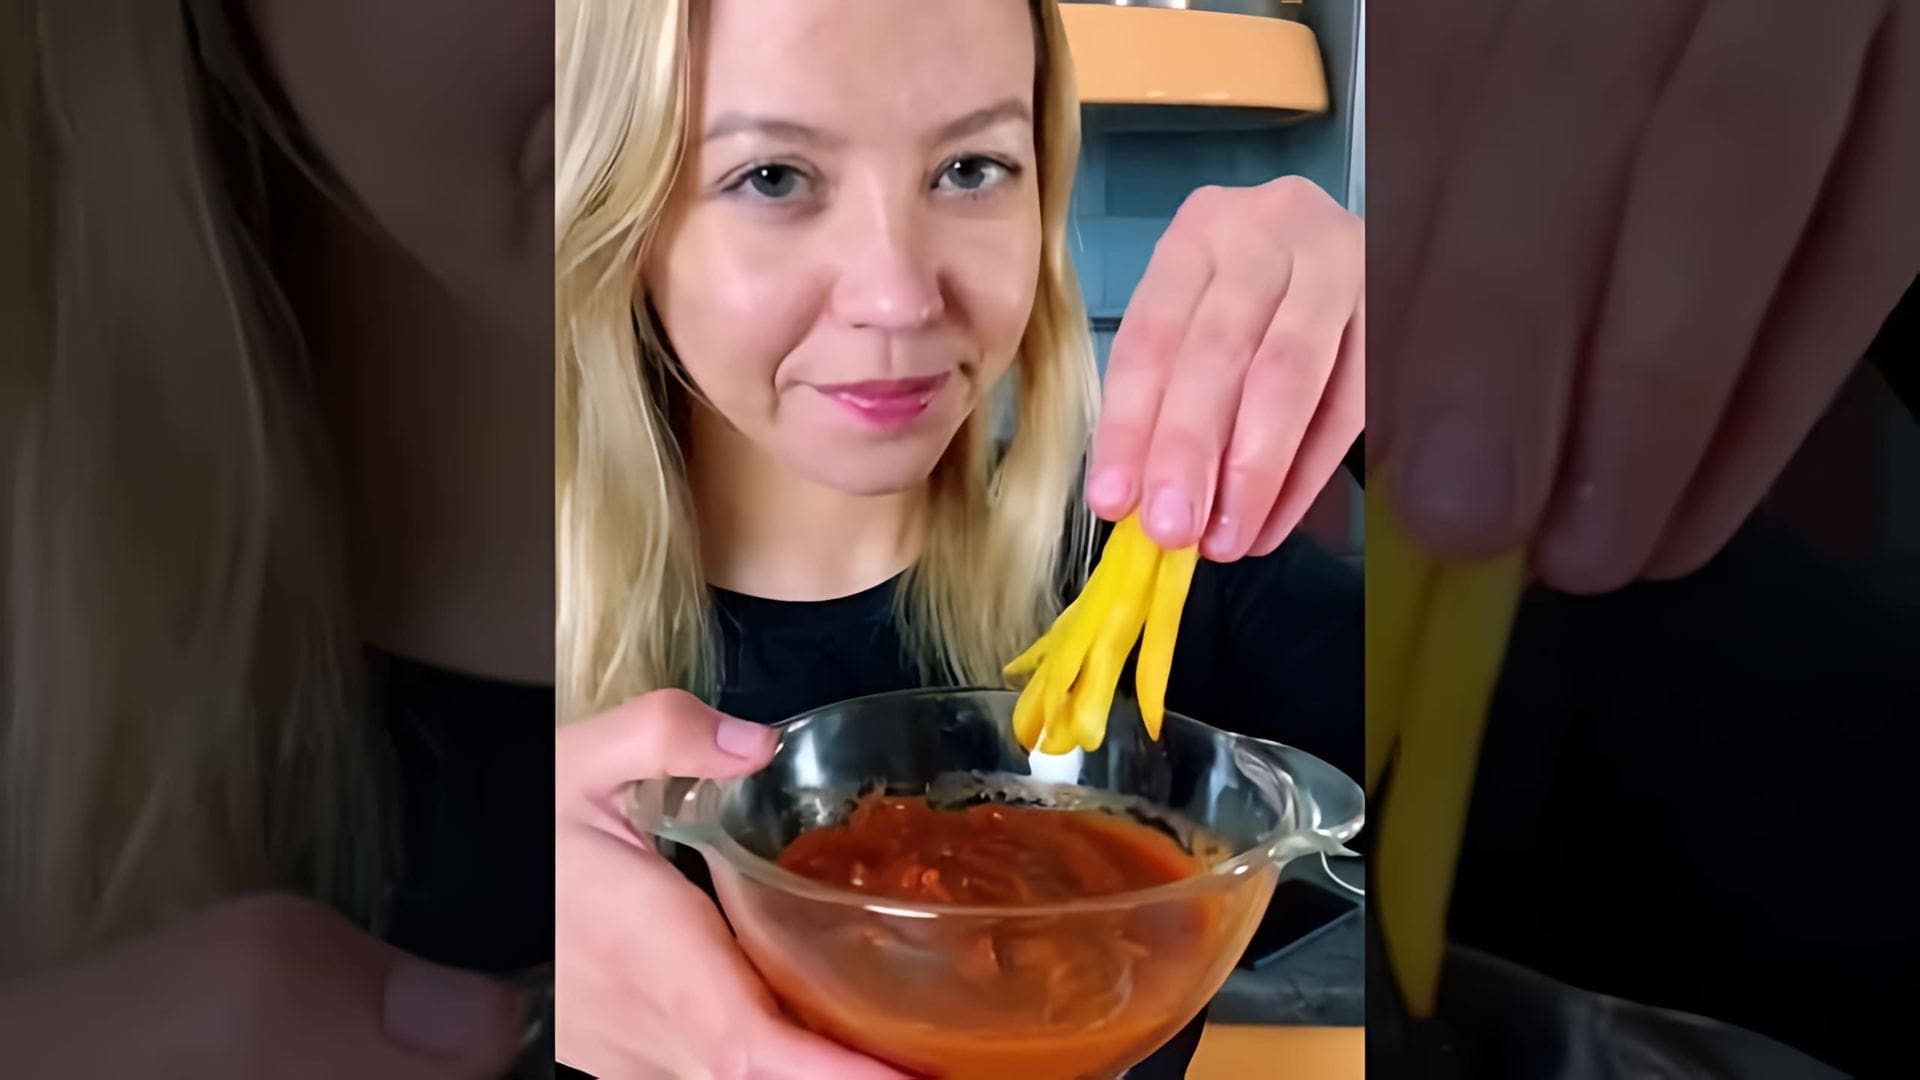 "Сделать кетчуп дома реально? | Простой рецепт за 10 минут" - это видео-ролик, который показывает, как приготовить кетчуп в домашних условиях всего за 10 минут